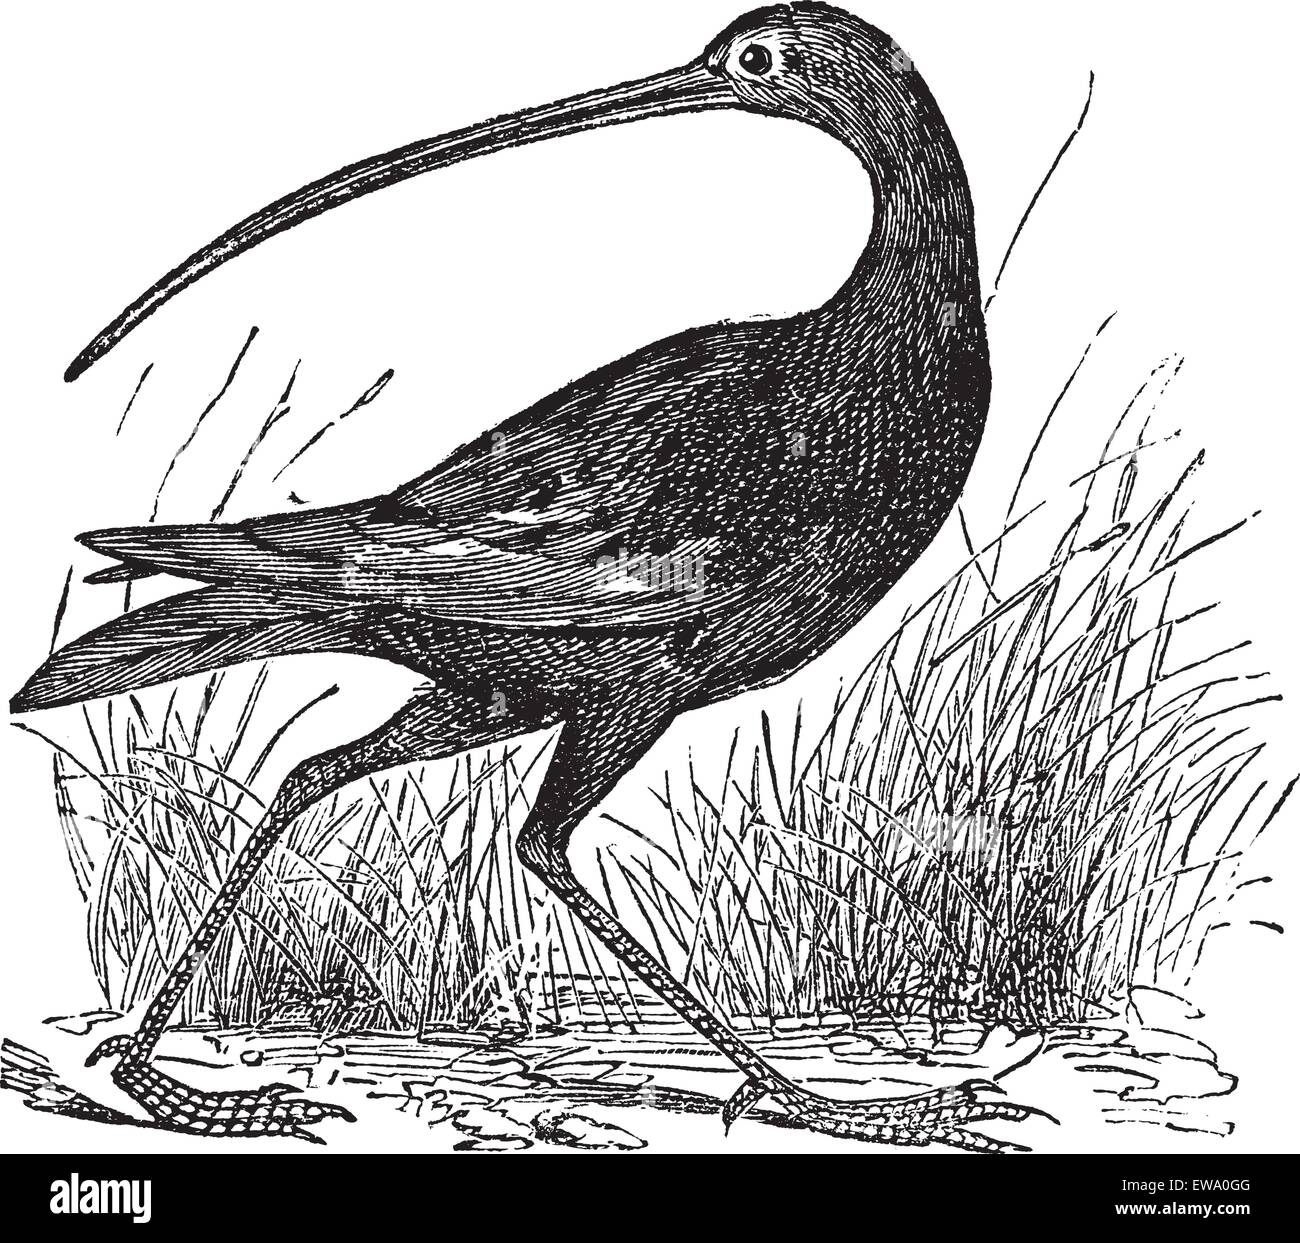 Slender-billed Curlew or Numenius tenuirostris, vintage engraving. Old engraved illustration of a Slender-billed Curlew. Stock Vector